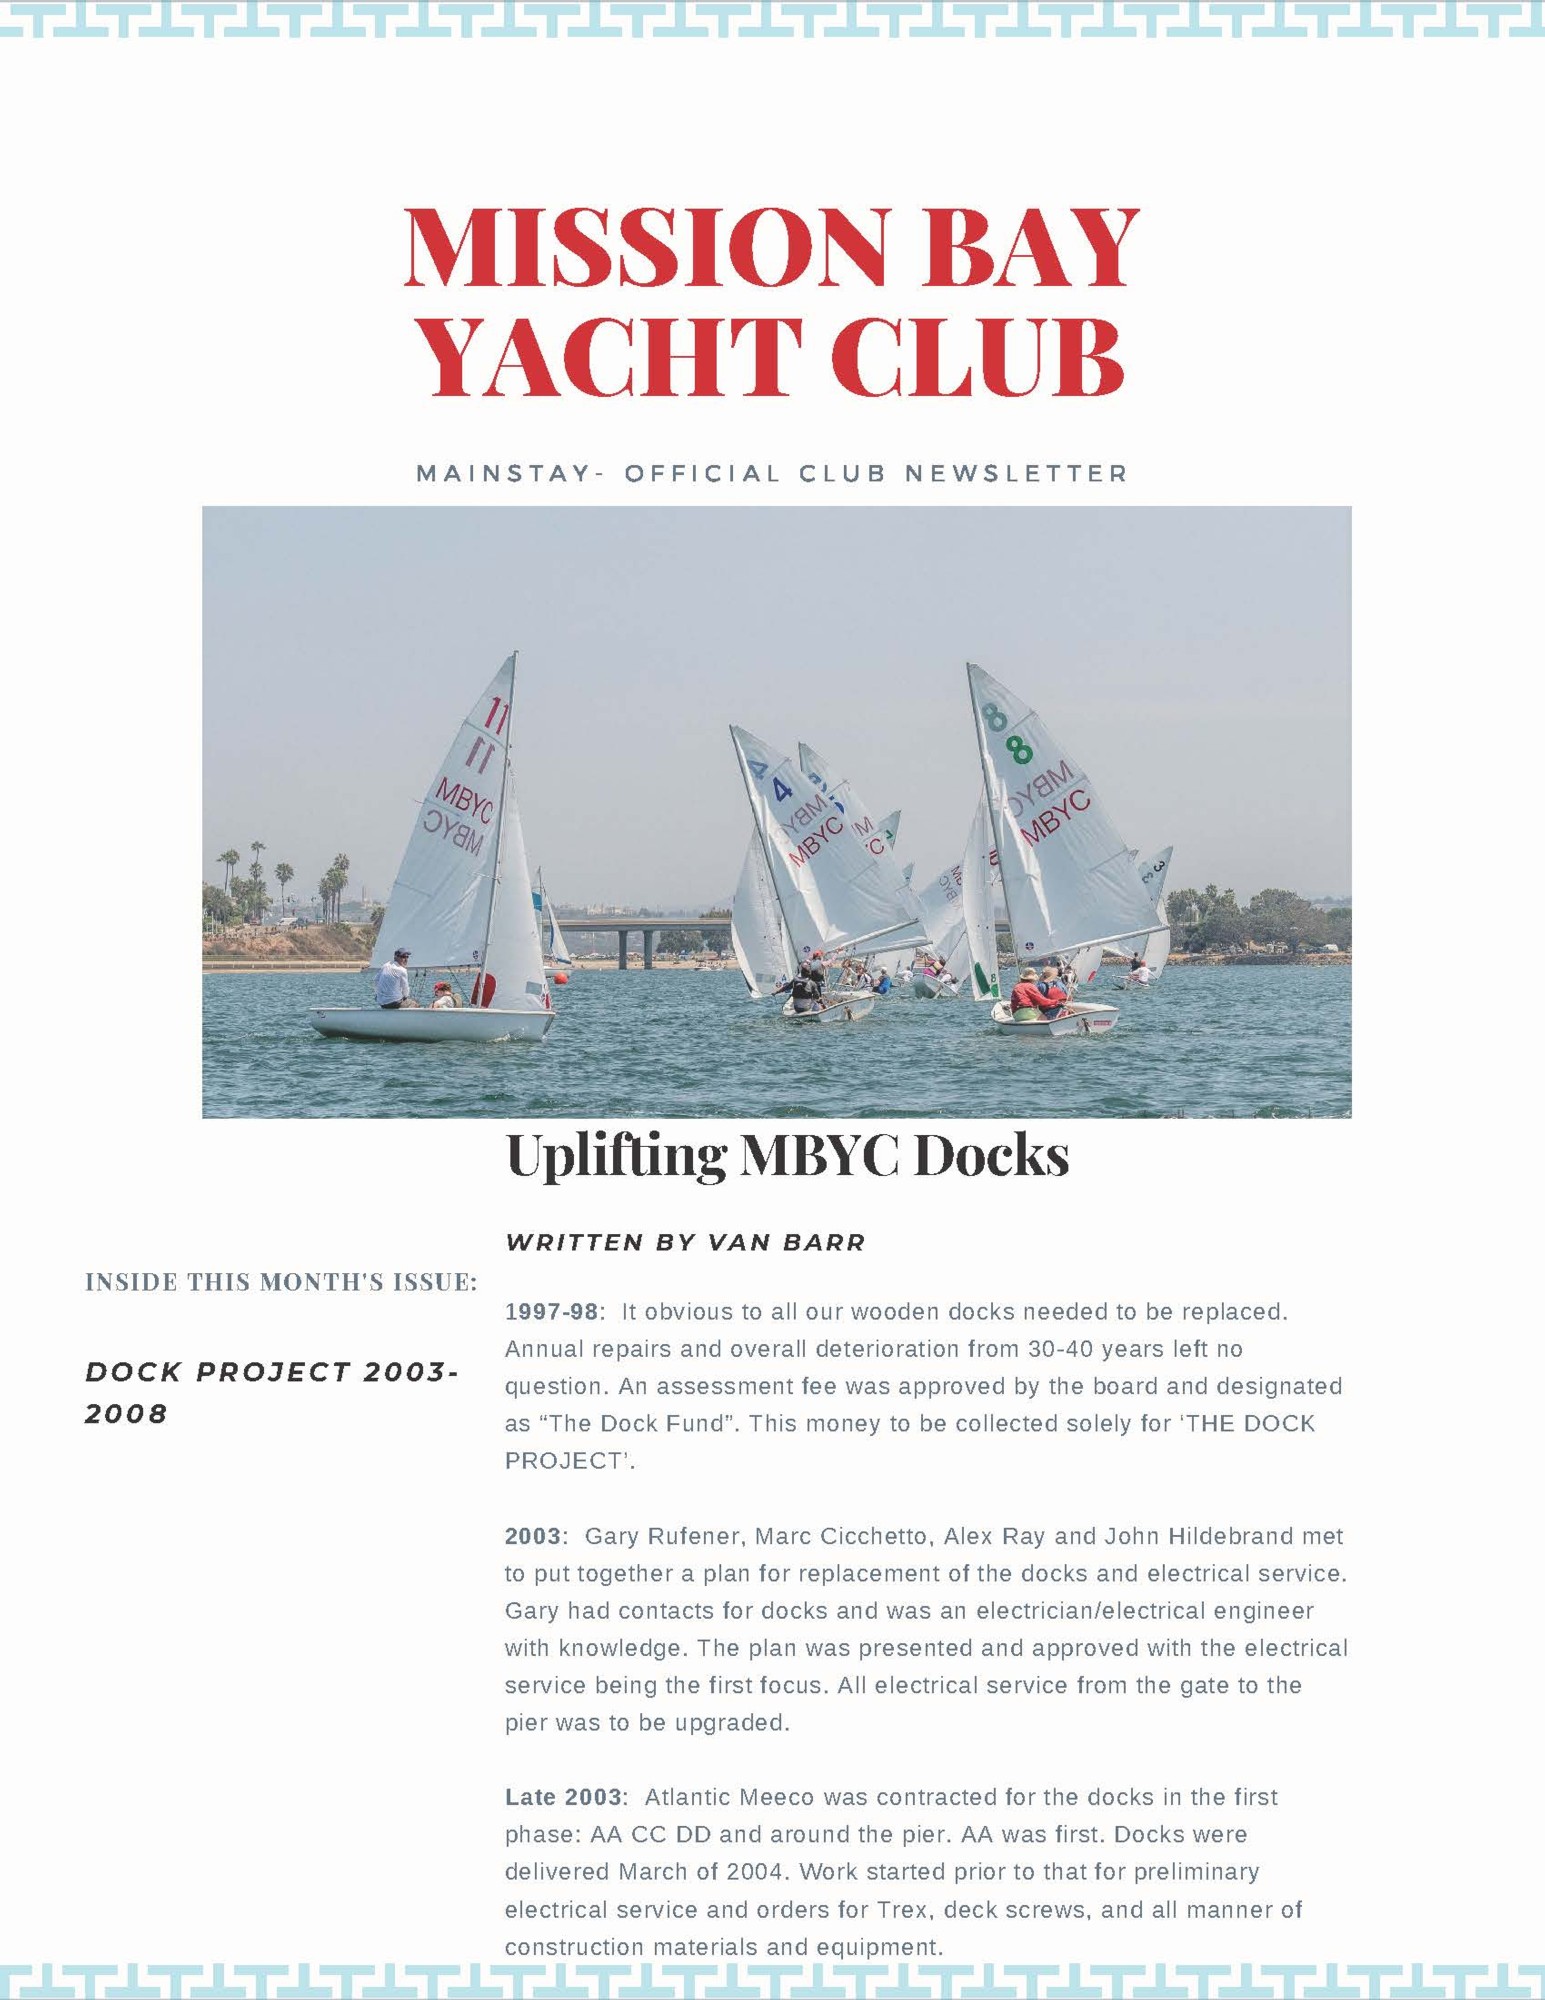 Club News 2021 Mission Bay Yacht Club